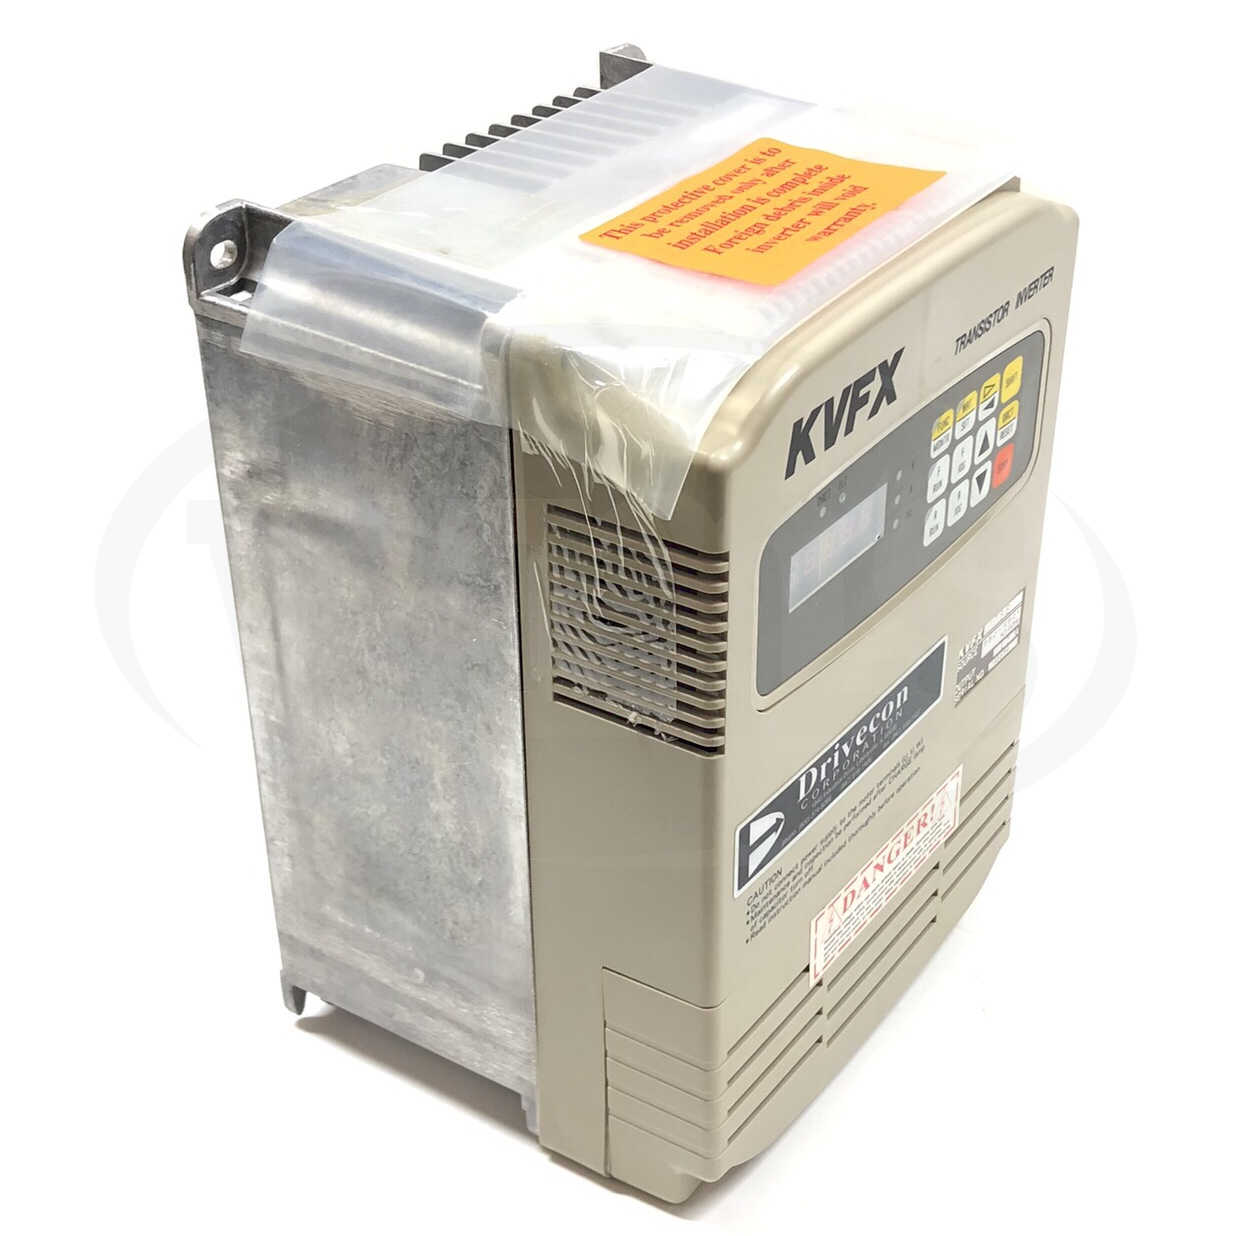 KVFX-475-E 10HP Drivecon Transistor Inverter, 3